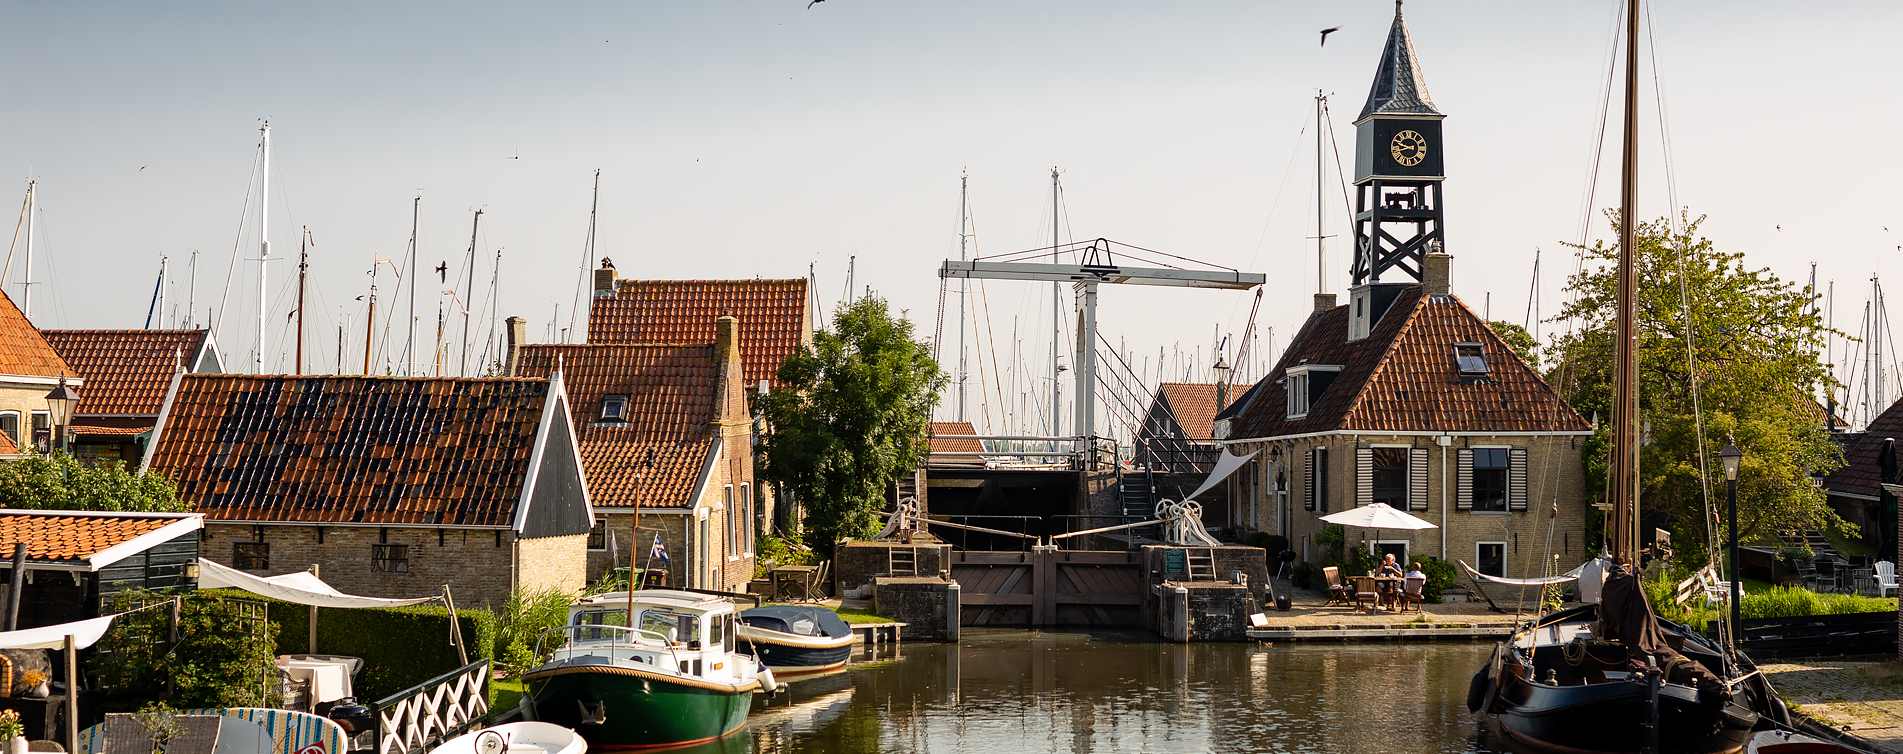 Sluis en haven van Hindeloopen - Assurantiekantoor M. Kruis